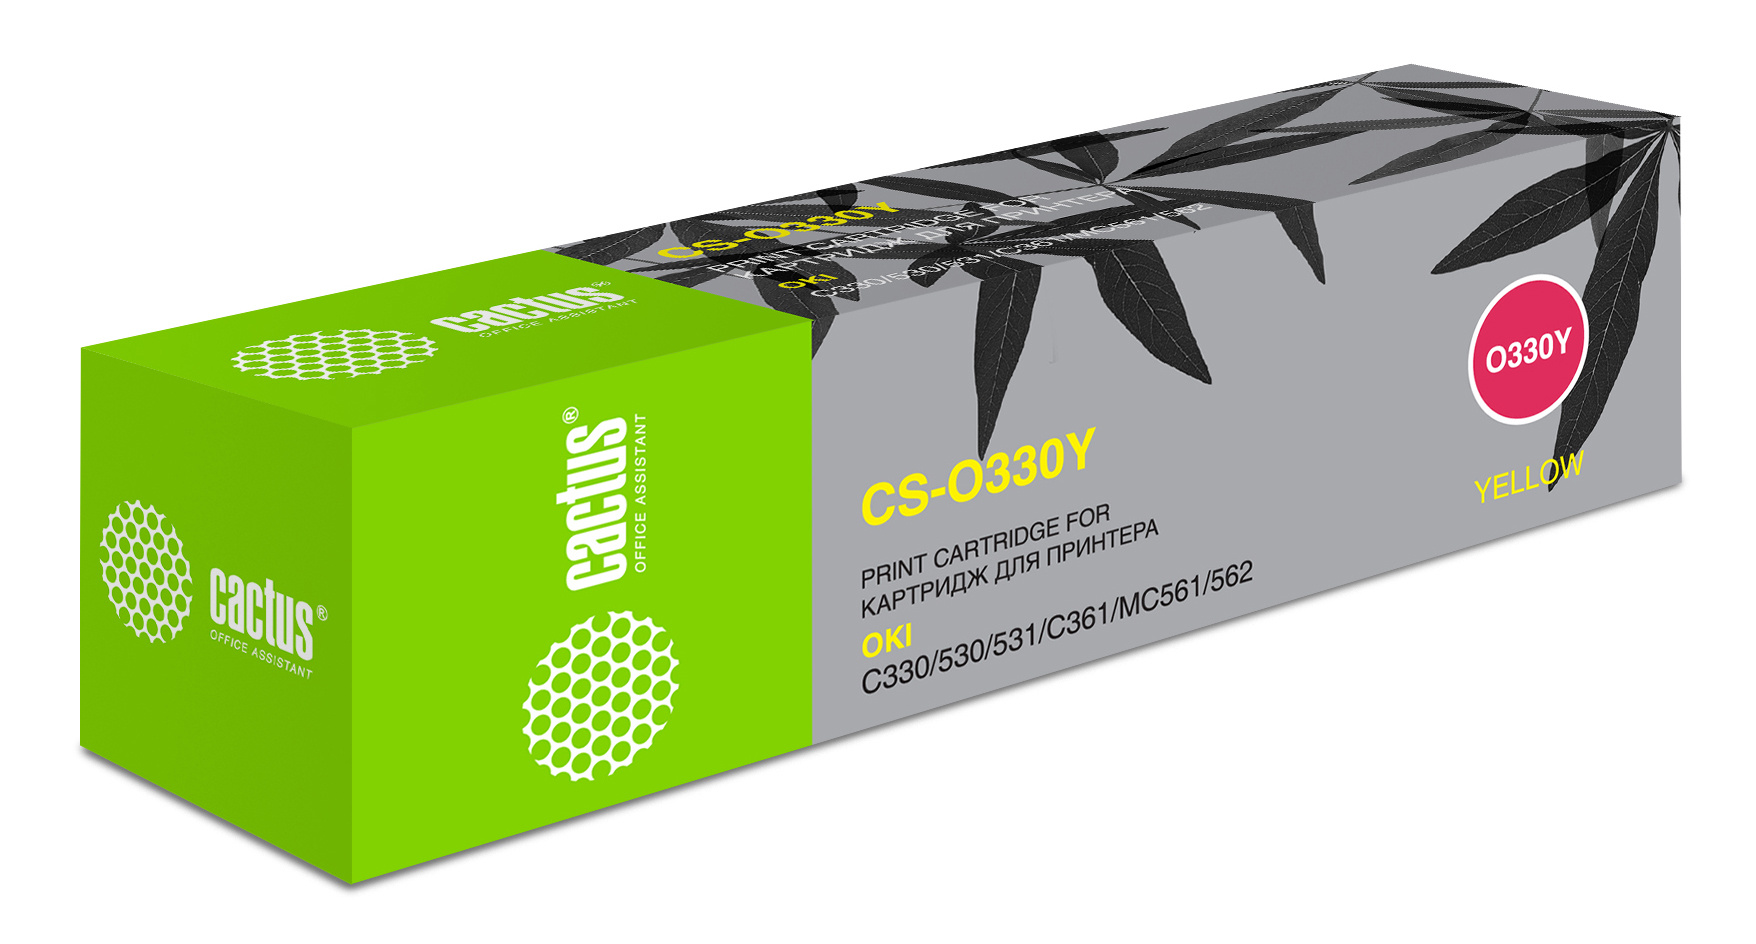 Картридж лазерный Cactus 44469714 CS-O330Y желтый (3000стр.) для Oki C330/C530